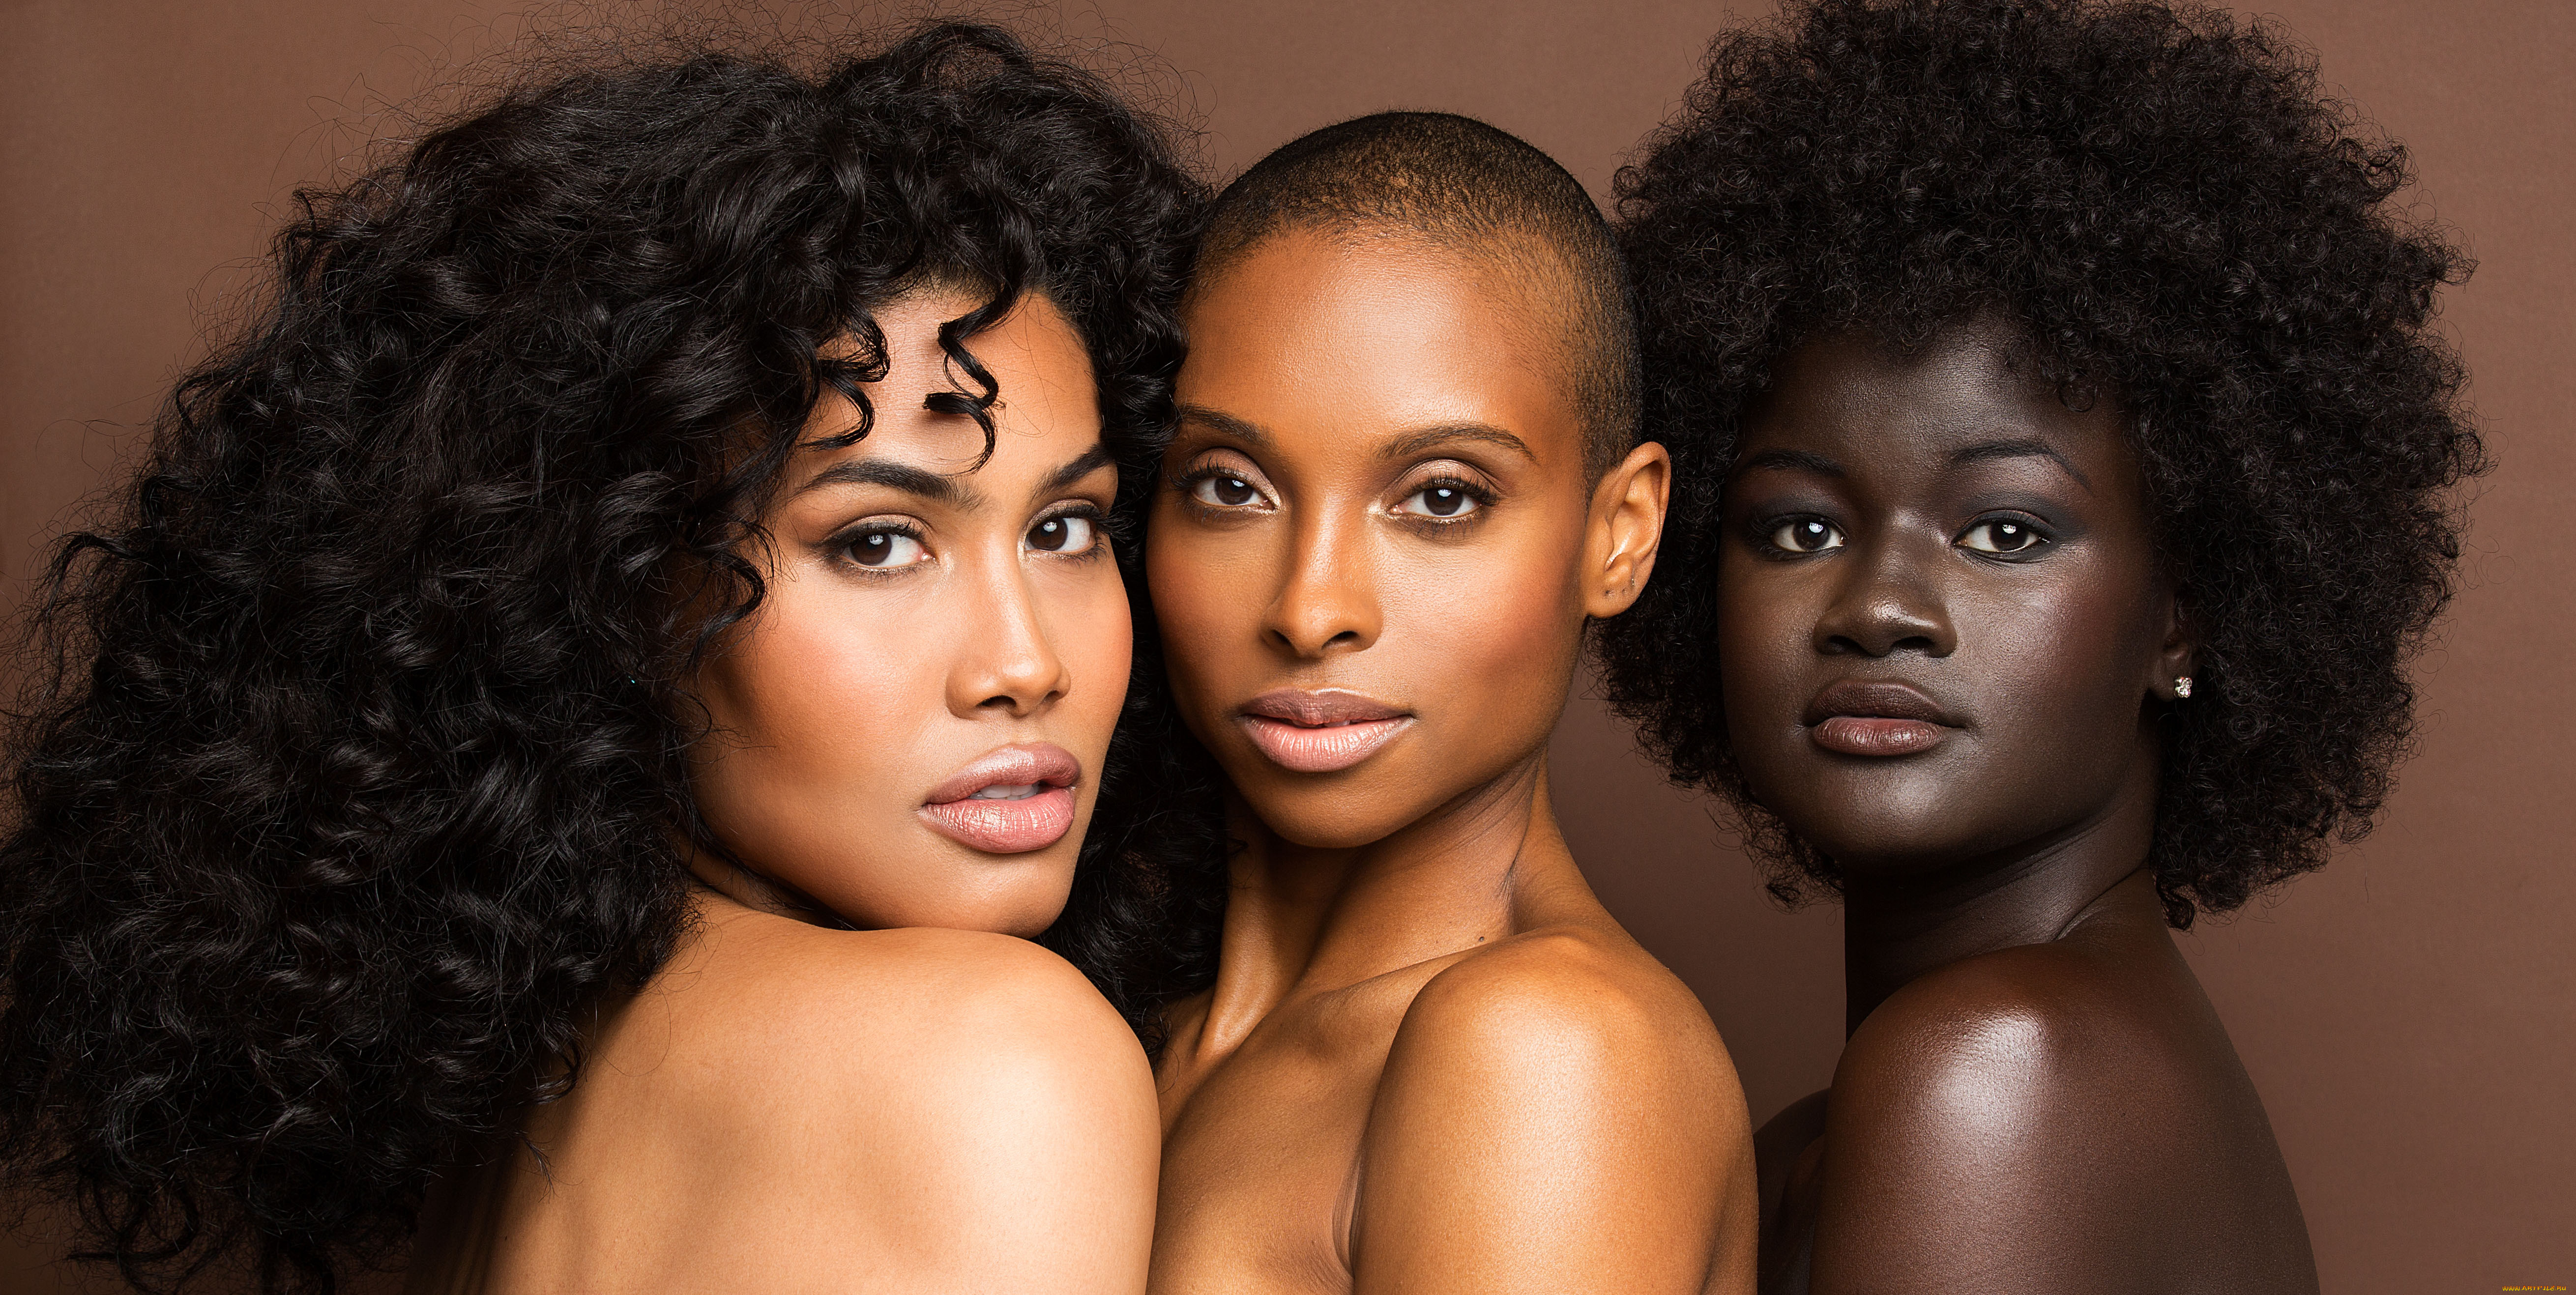 Негритянки двое. Темнокожие девушки. Оттенки кожи афроамериканцев. Темнокожий и светлокожий. Девушки с разным цветом кожи.